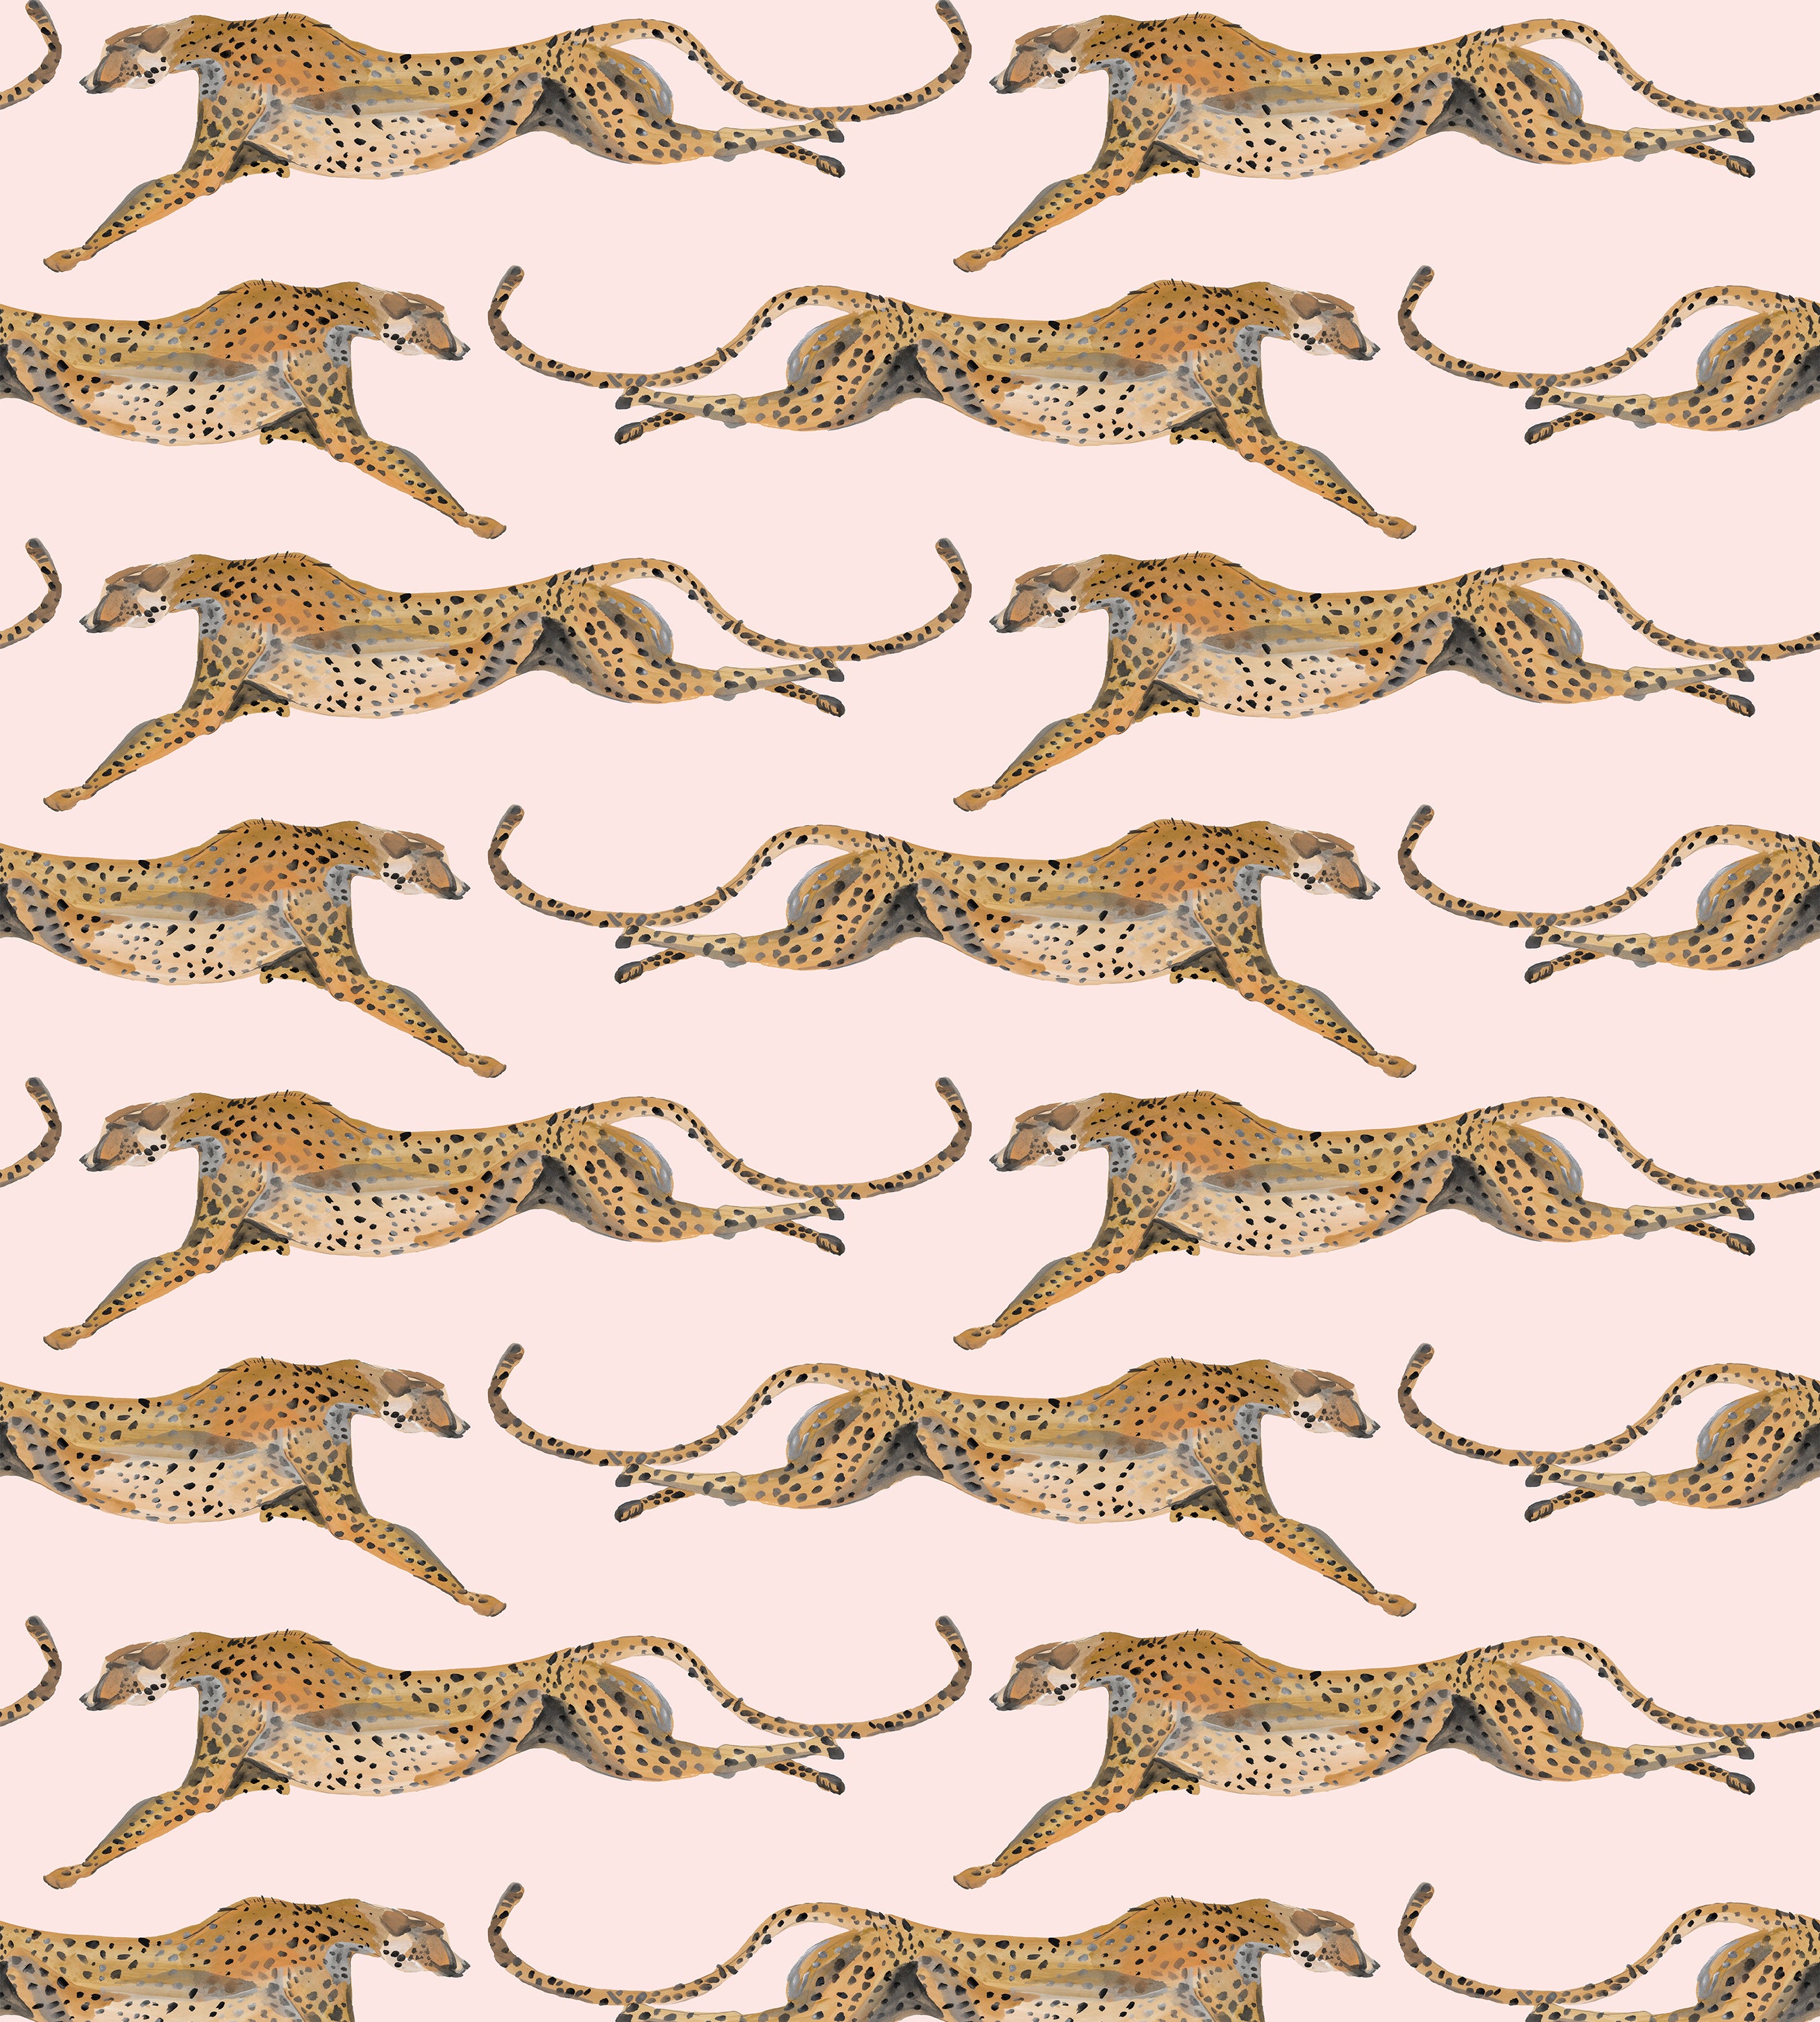 Cheetah wallpaper